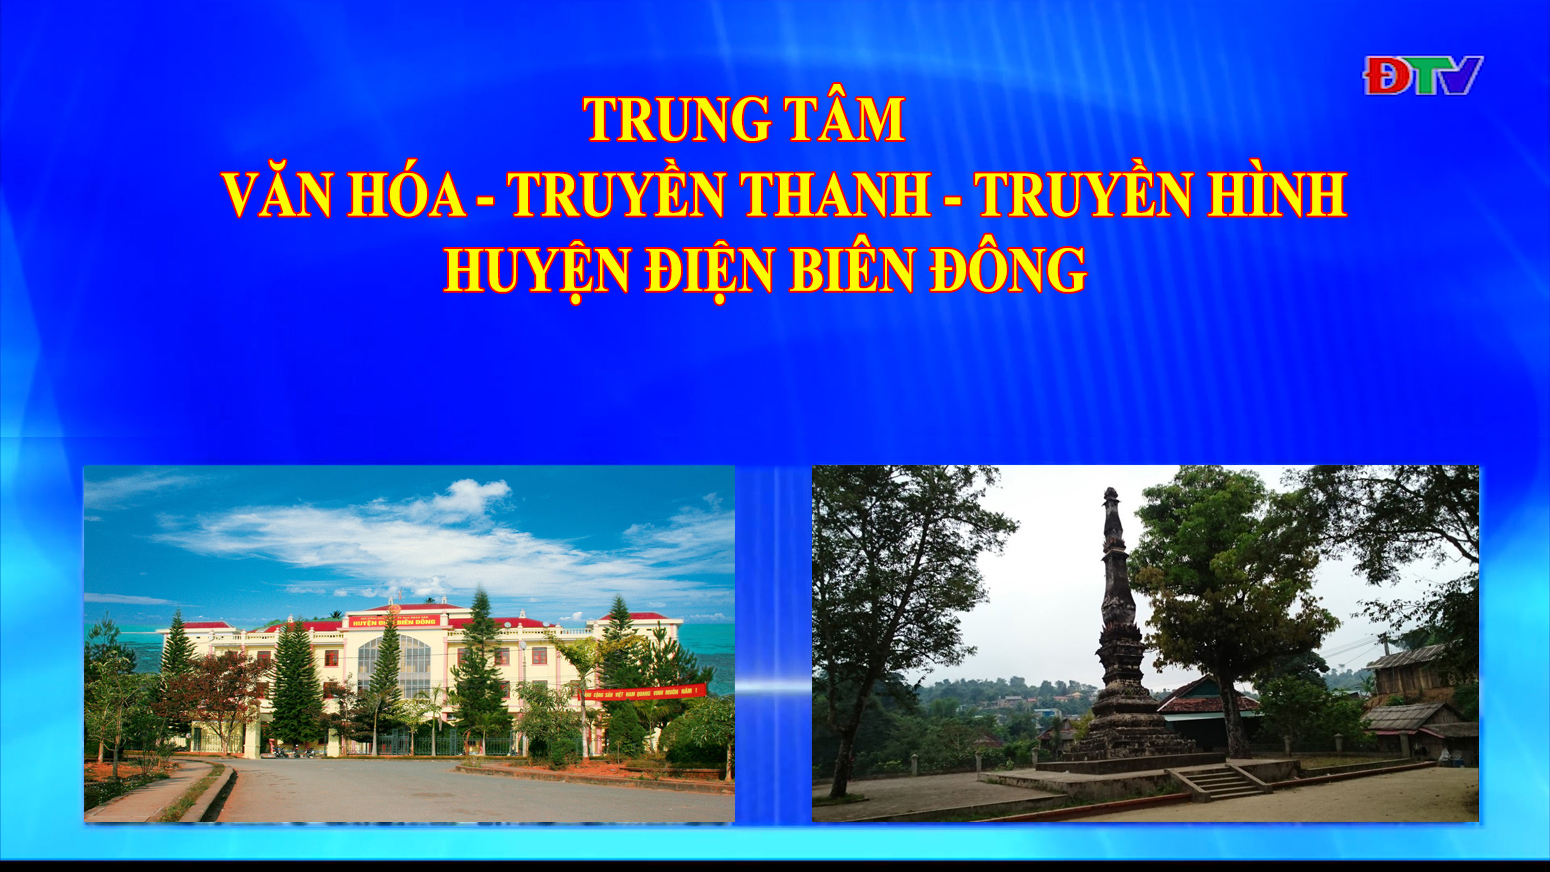 Trung tâm VH-TTTH huyện Điện Biên Đông (Ngày 24-4-2021)